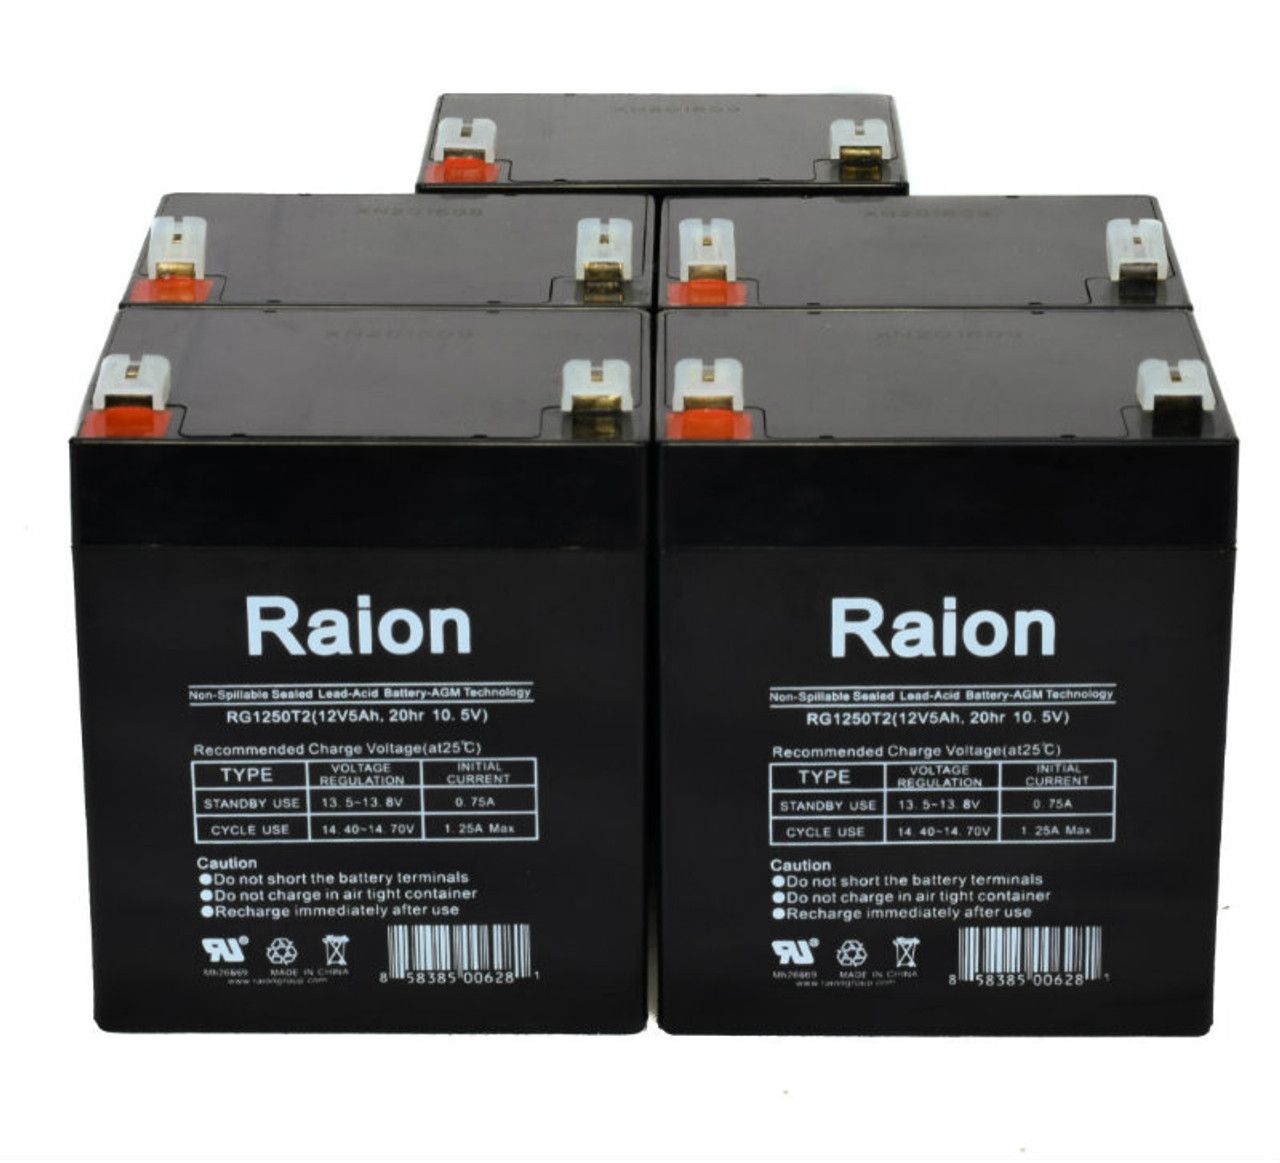 Raion Power RG1250T1 12V 5Ah Medical Battery for Novametrix 7000 Monitor - 5 Pack